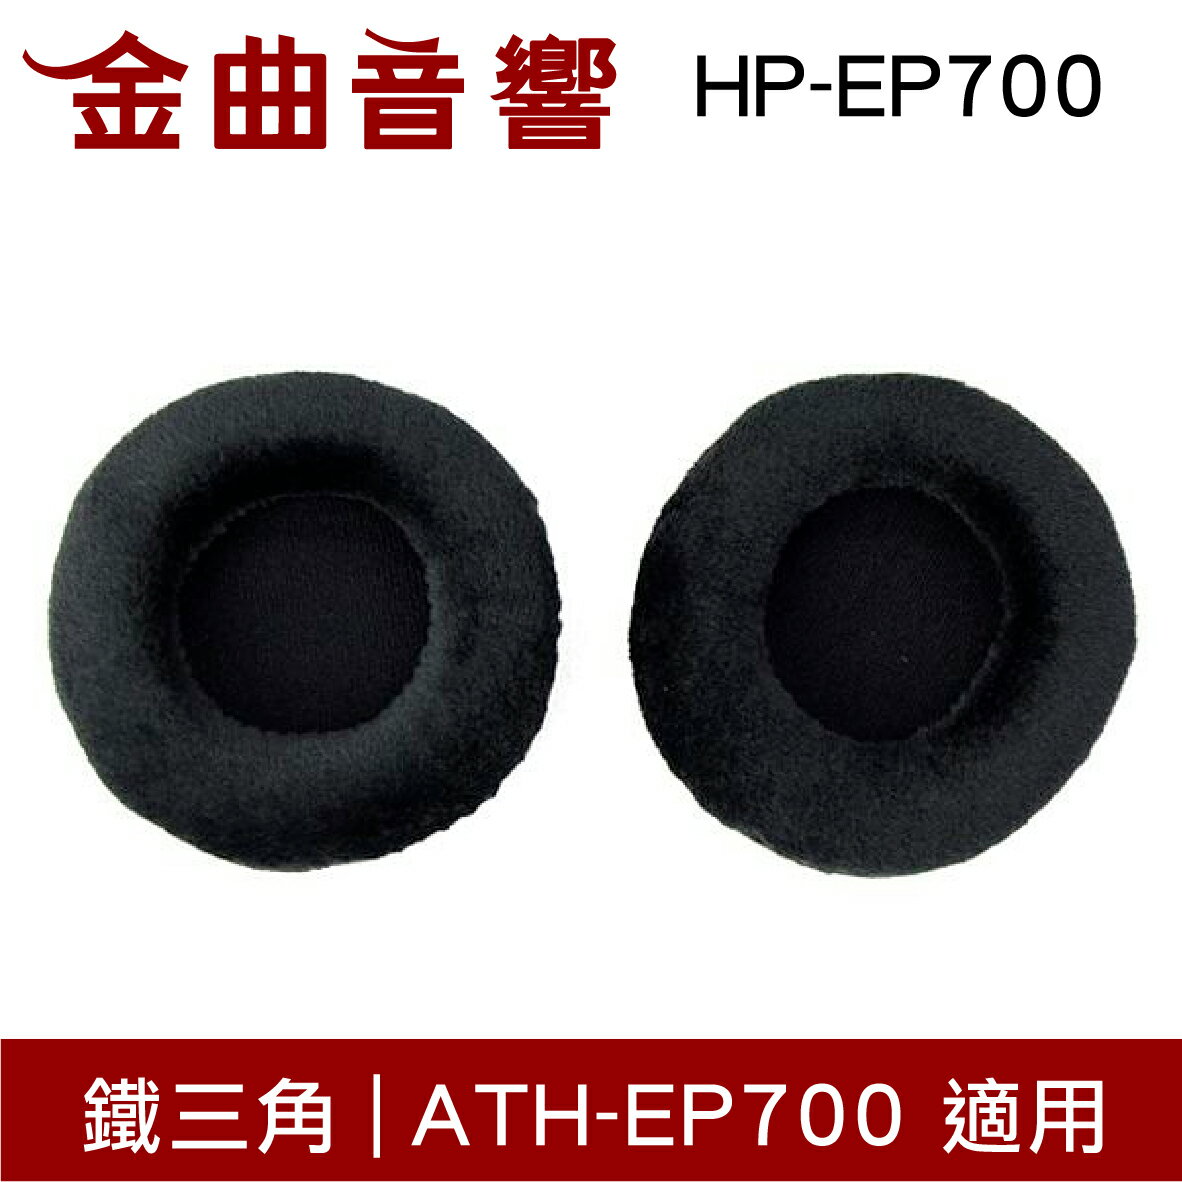 鐵三角 HP-EP700 替換耳罩 一對 ATH-EP700 適用 | 金曲音響